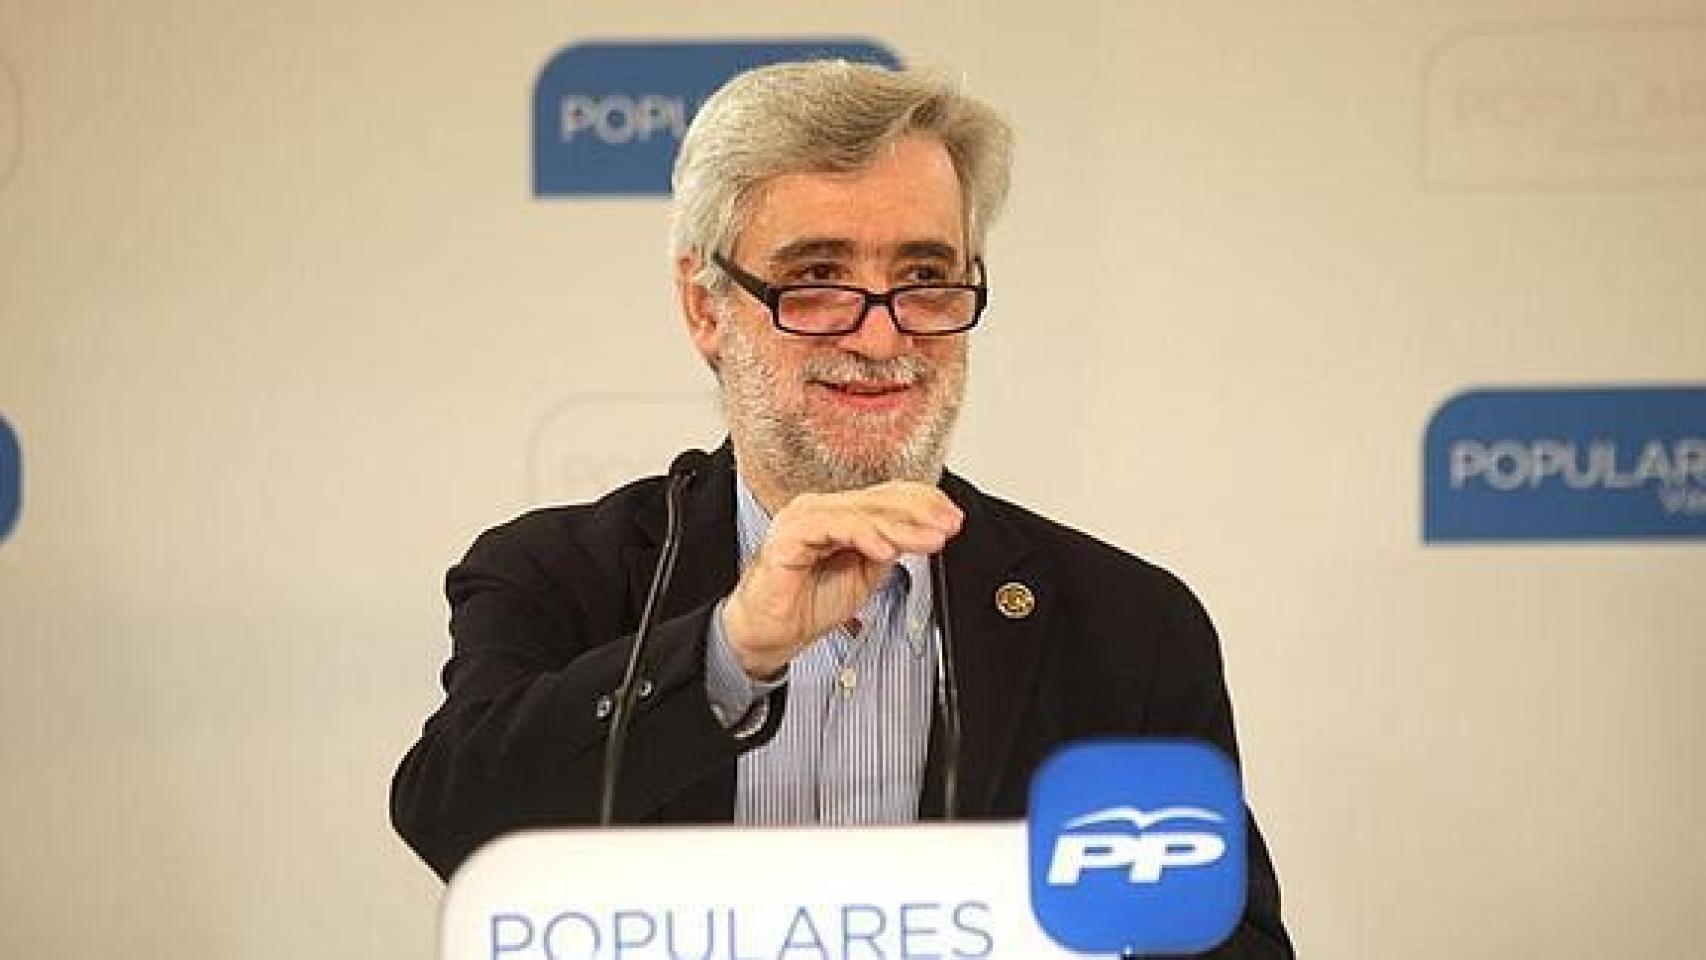 Juan Carlos Cano, juntero del PP en la Junta General de Guipúzcoa.